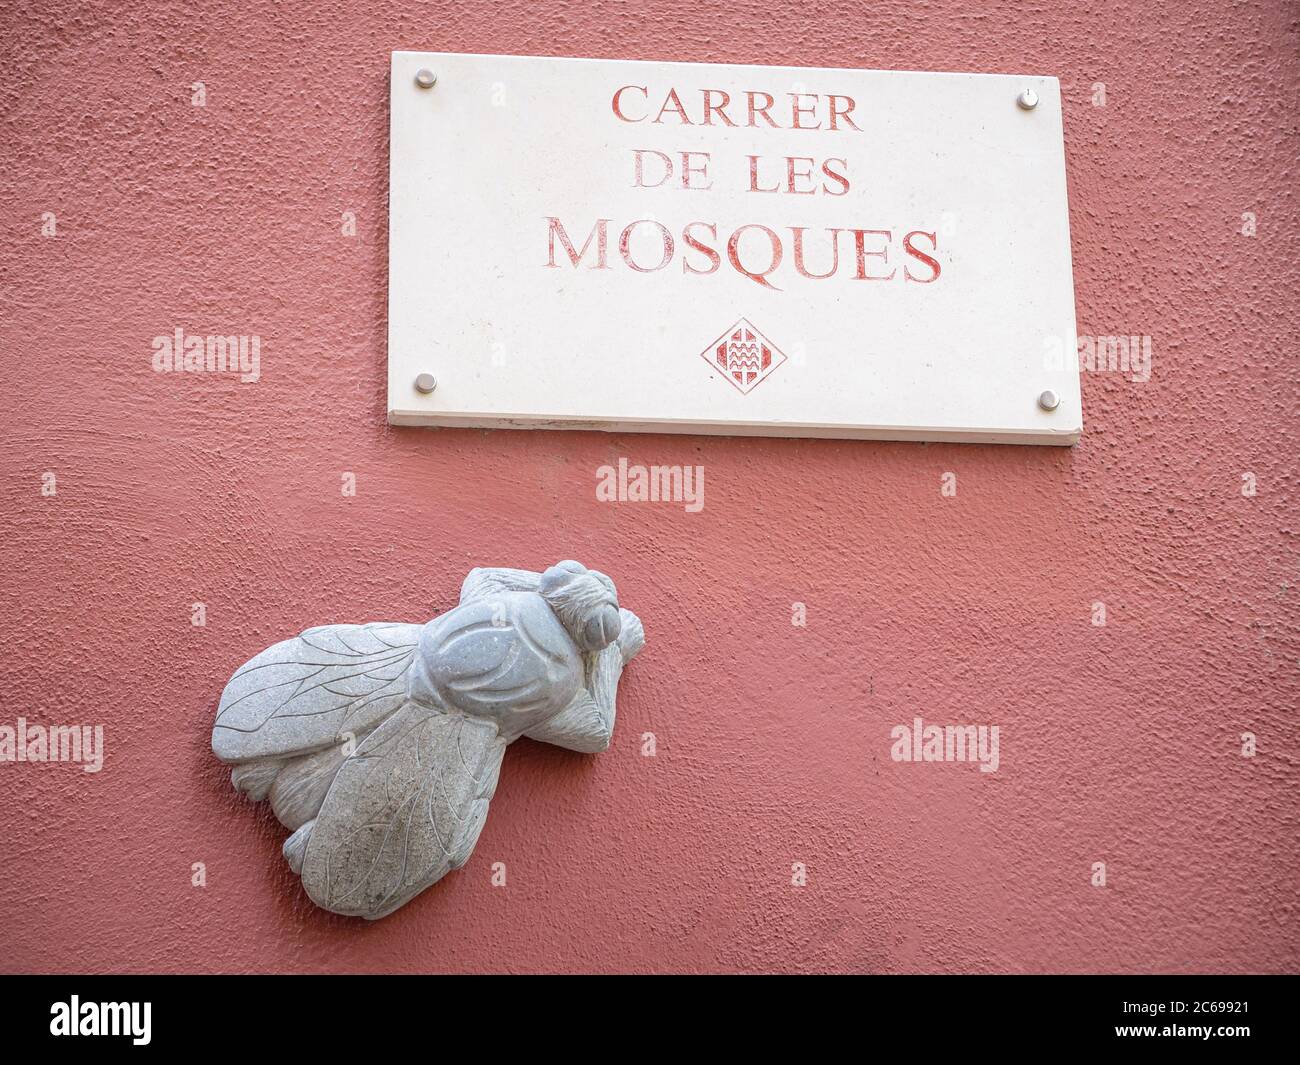 GÉRONE ESPAGNE-27 JUIN 2020 : plaque de rue du Carrer de les mosquées (rue des mouches) avec la figure de la mouche Banque D'Images